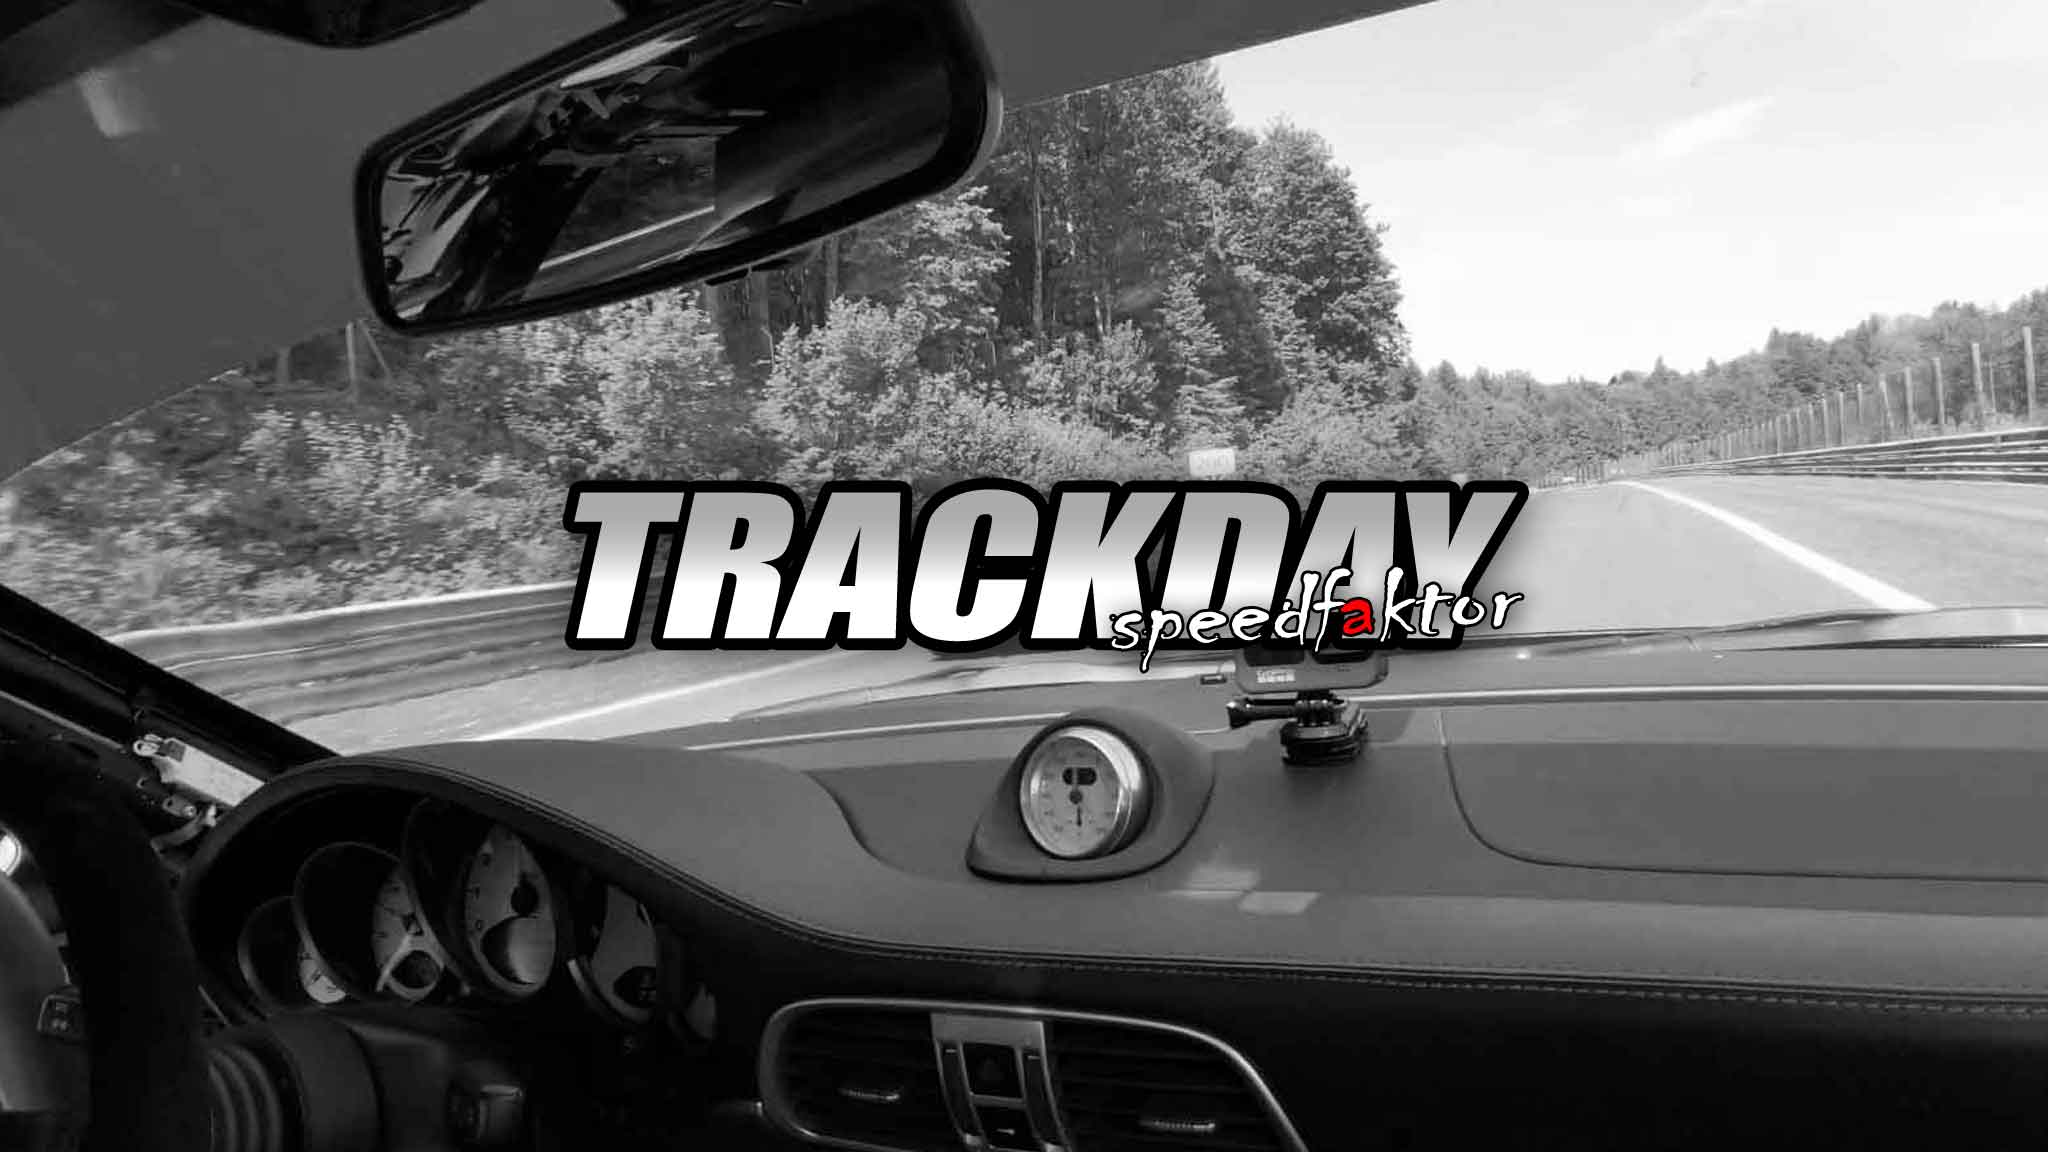 Speedfaktor Trackday